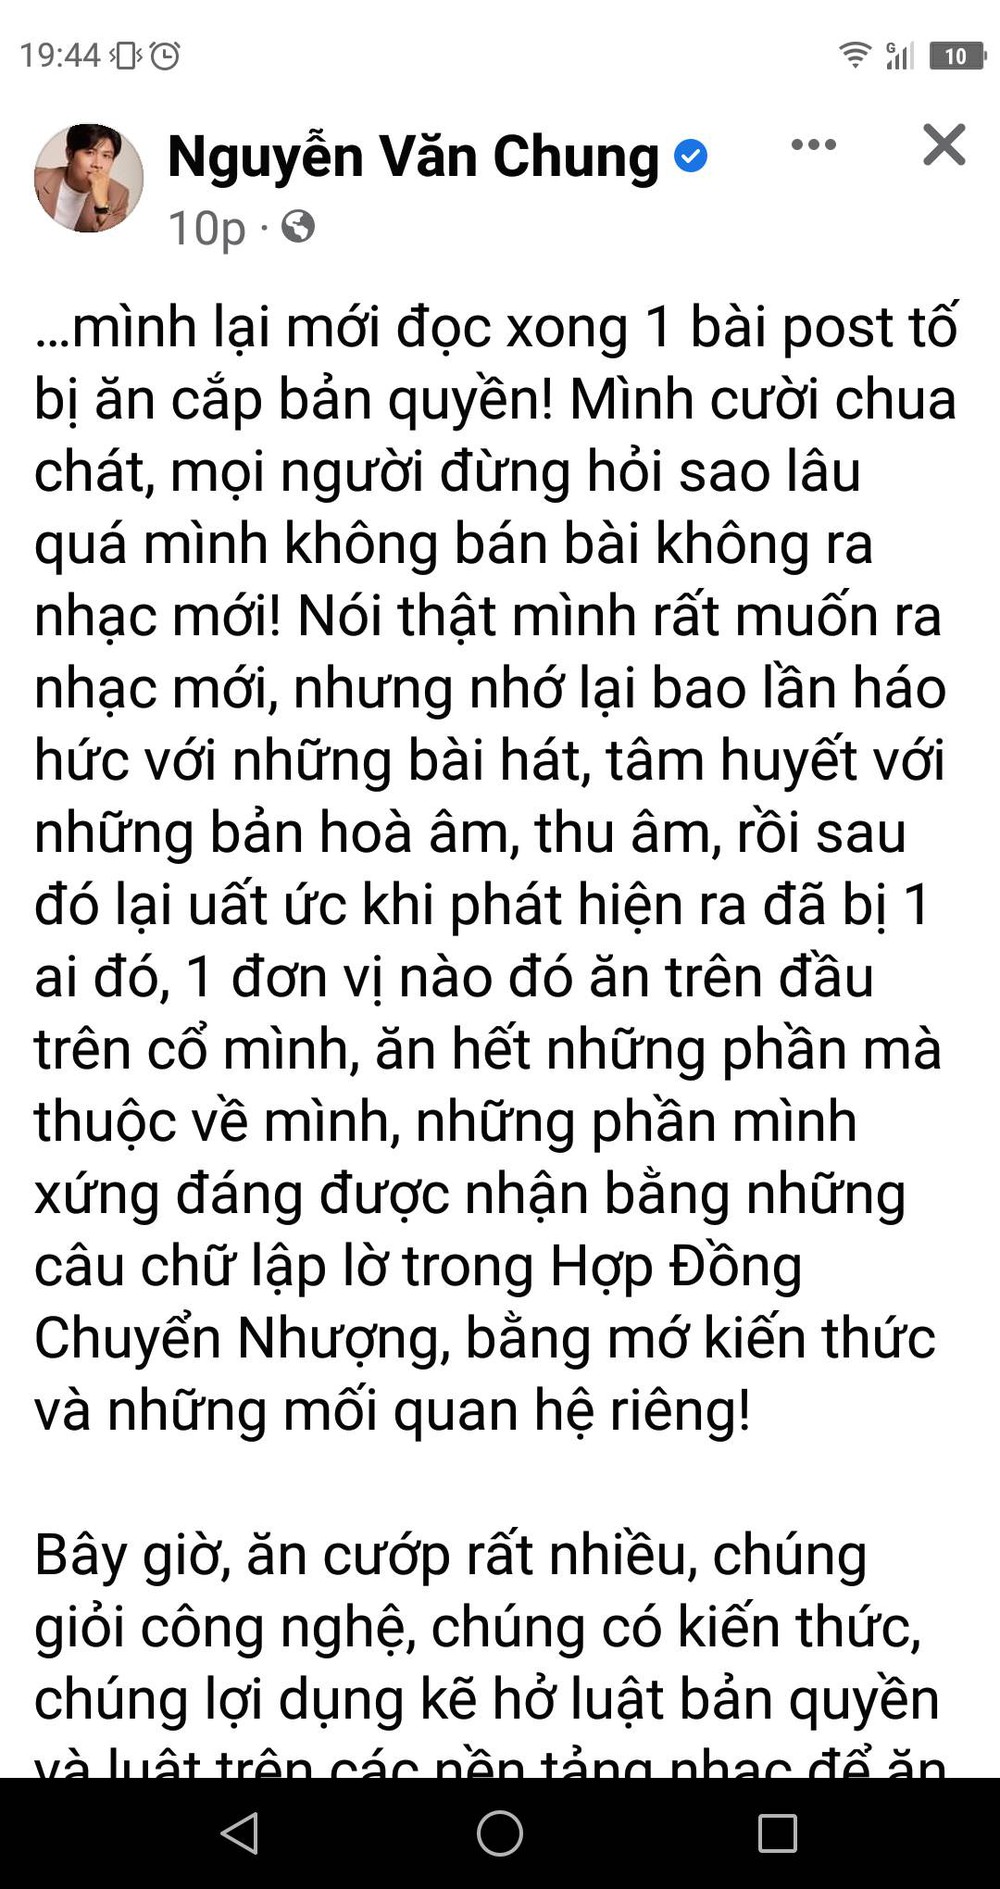 Nhạc sĩ Nguyễn Văn Chung: Tôi từng bị ăn cắp nhiều lần, số tiền bị mất chắc chắn không nhỏ - Ảnh 1.